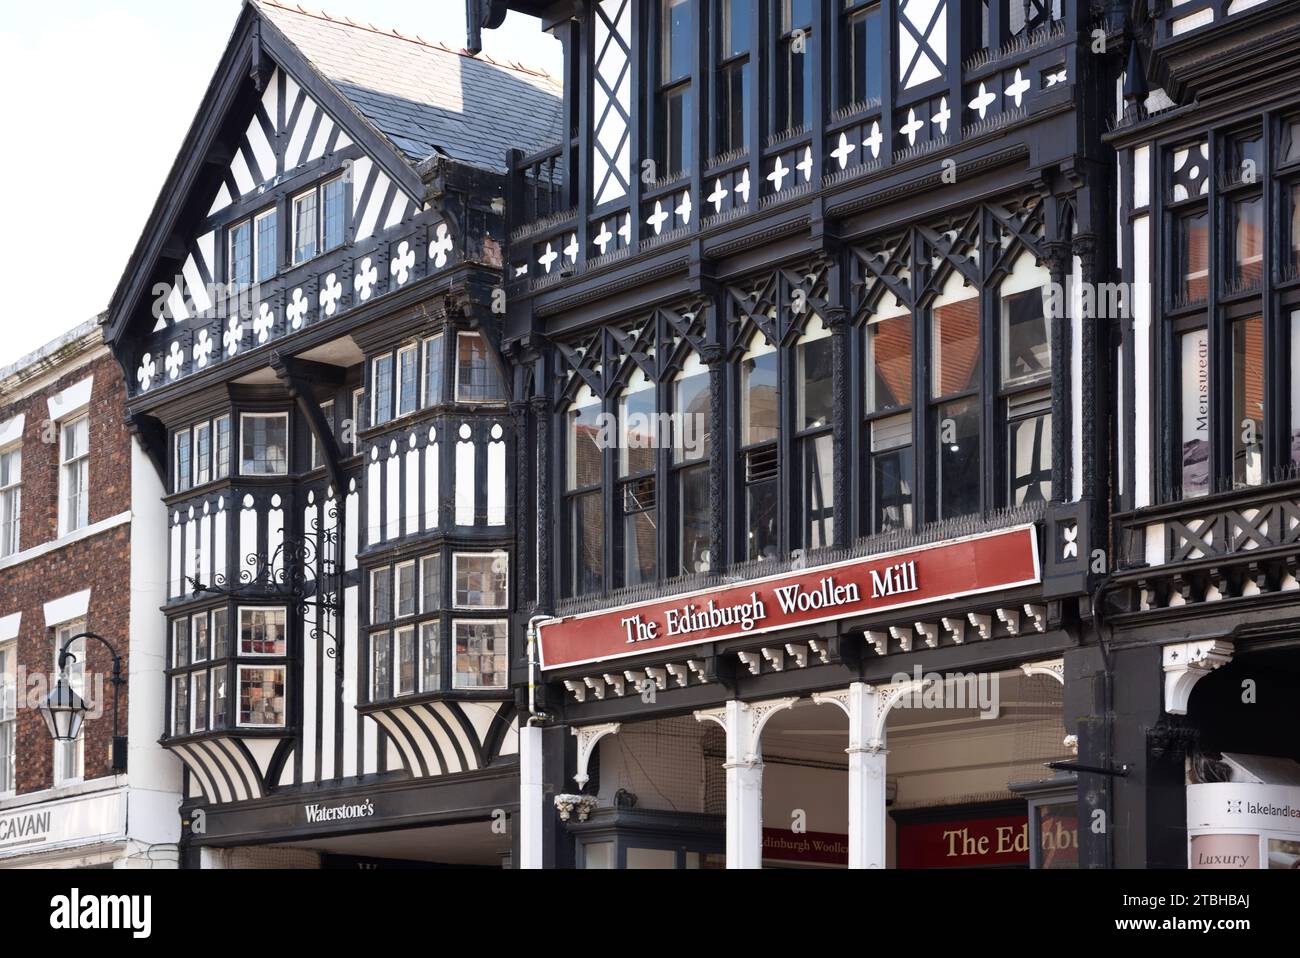 The Rows Eastgate Street, y compris des bâtiments historiques à colombages et un magasin de laine d'Édimbourg ou magasin Chester Angleterre Banque D'Images